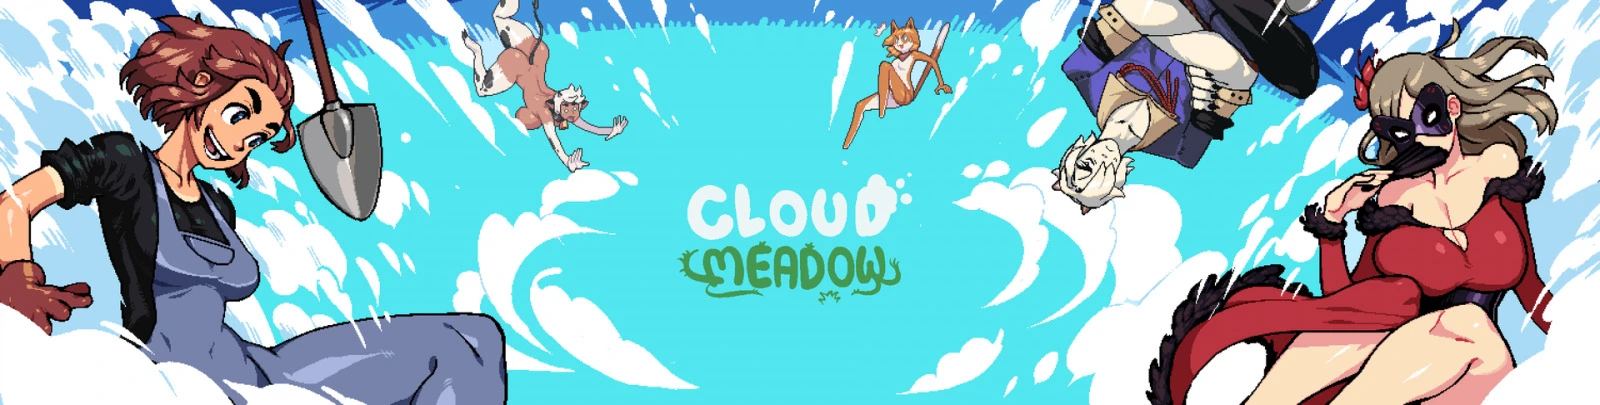 Cloud Meadow [v0.0.3.17a] main image